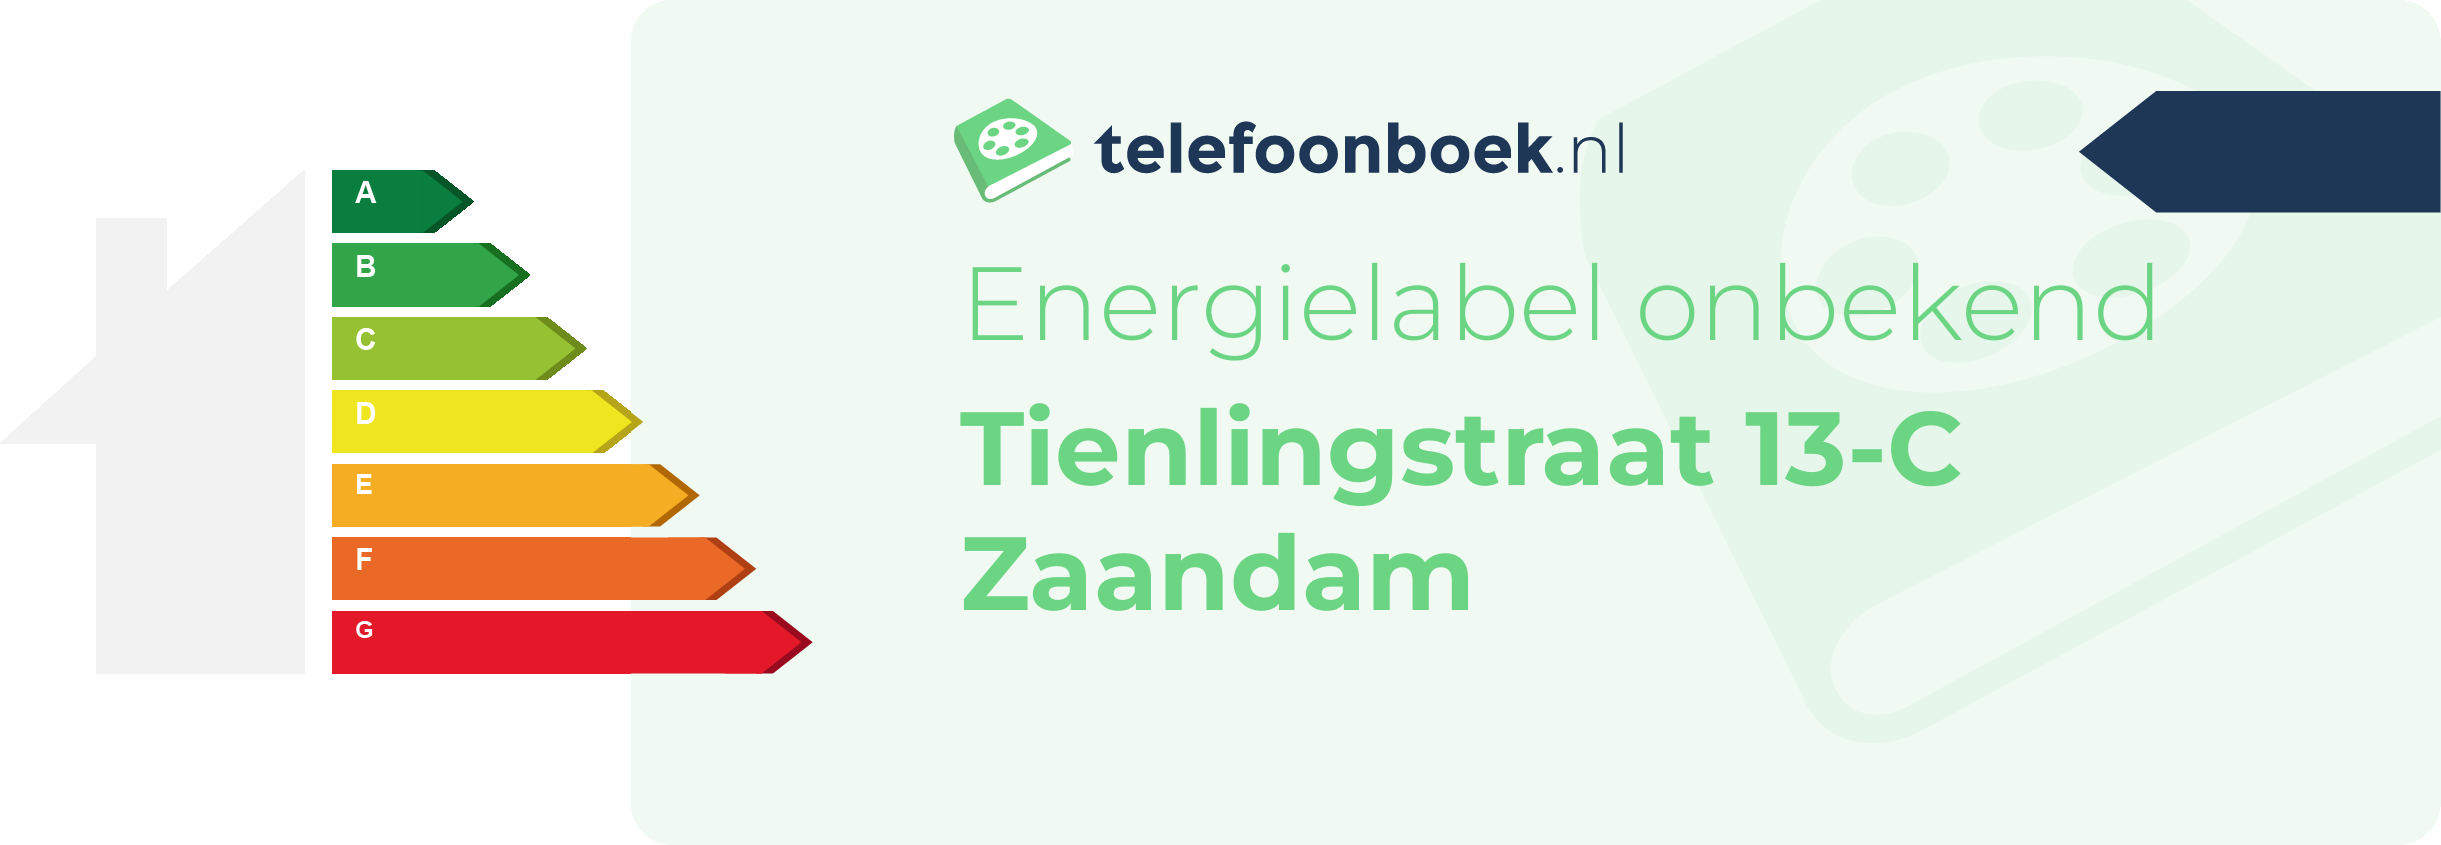 Energielabel Tienlingstraat 13-C Zaandam